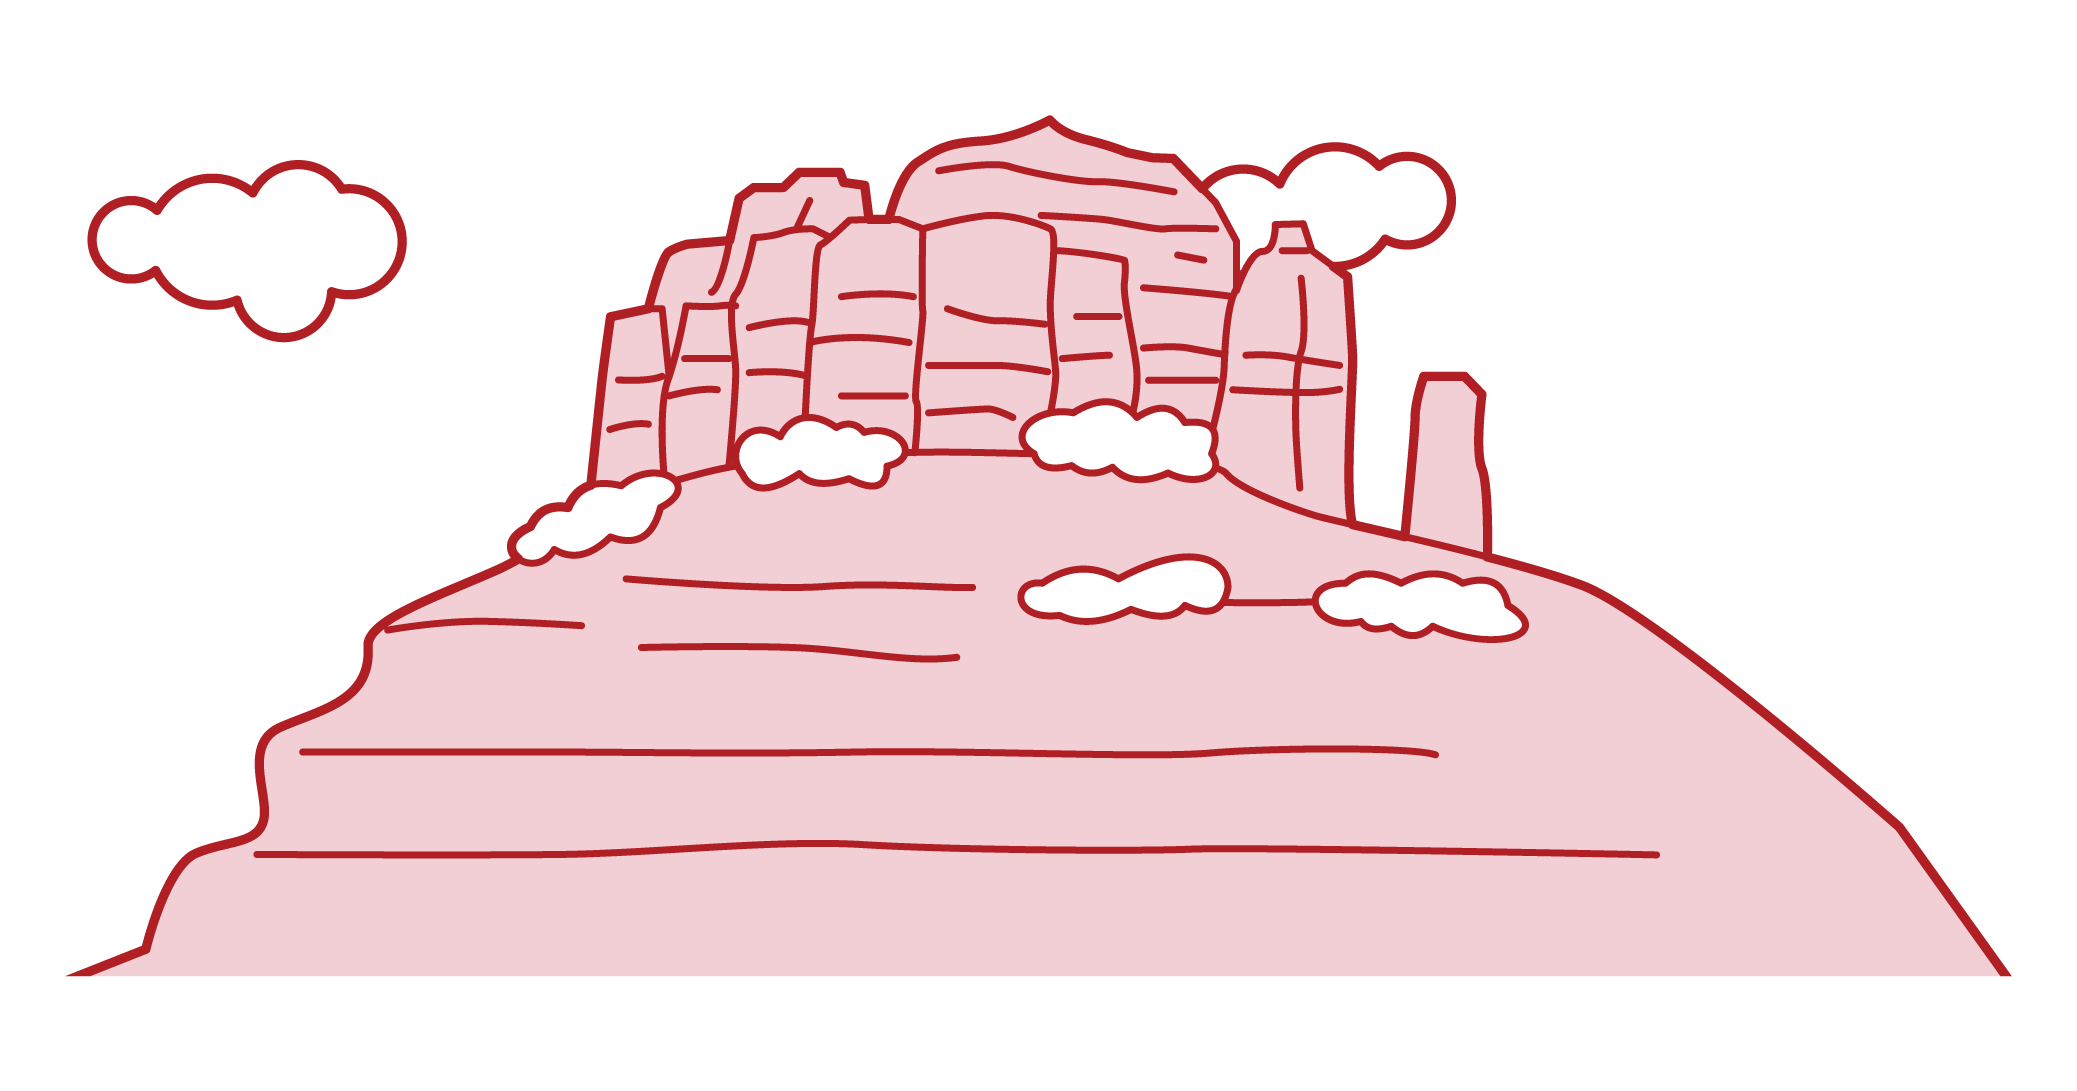 세도나 벨 록 의 삽화